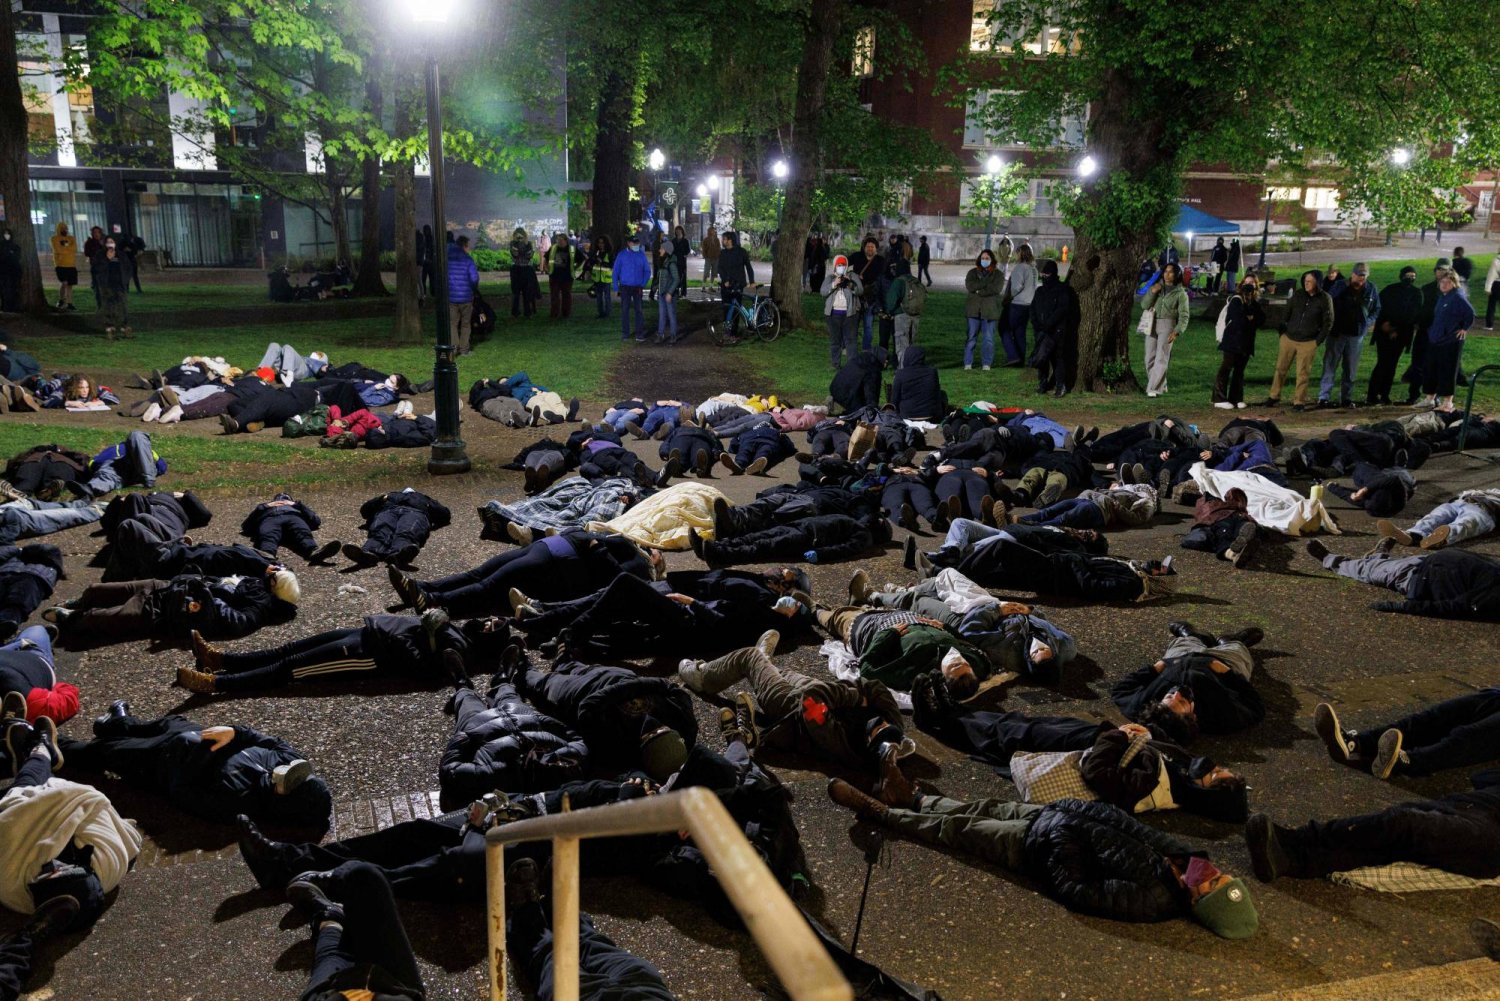 طلاب مؤيدون للفلسطينيين يستلقون على الأرض أثناء تظاهرهم في حرم جامعة ولاية بورتلاند في أوريغون (أ.ف.ب)